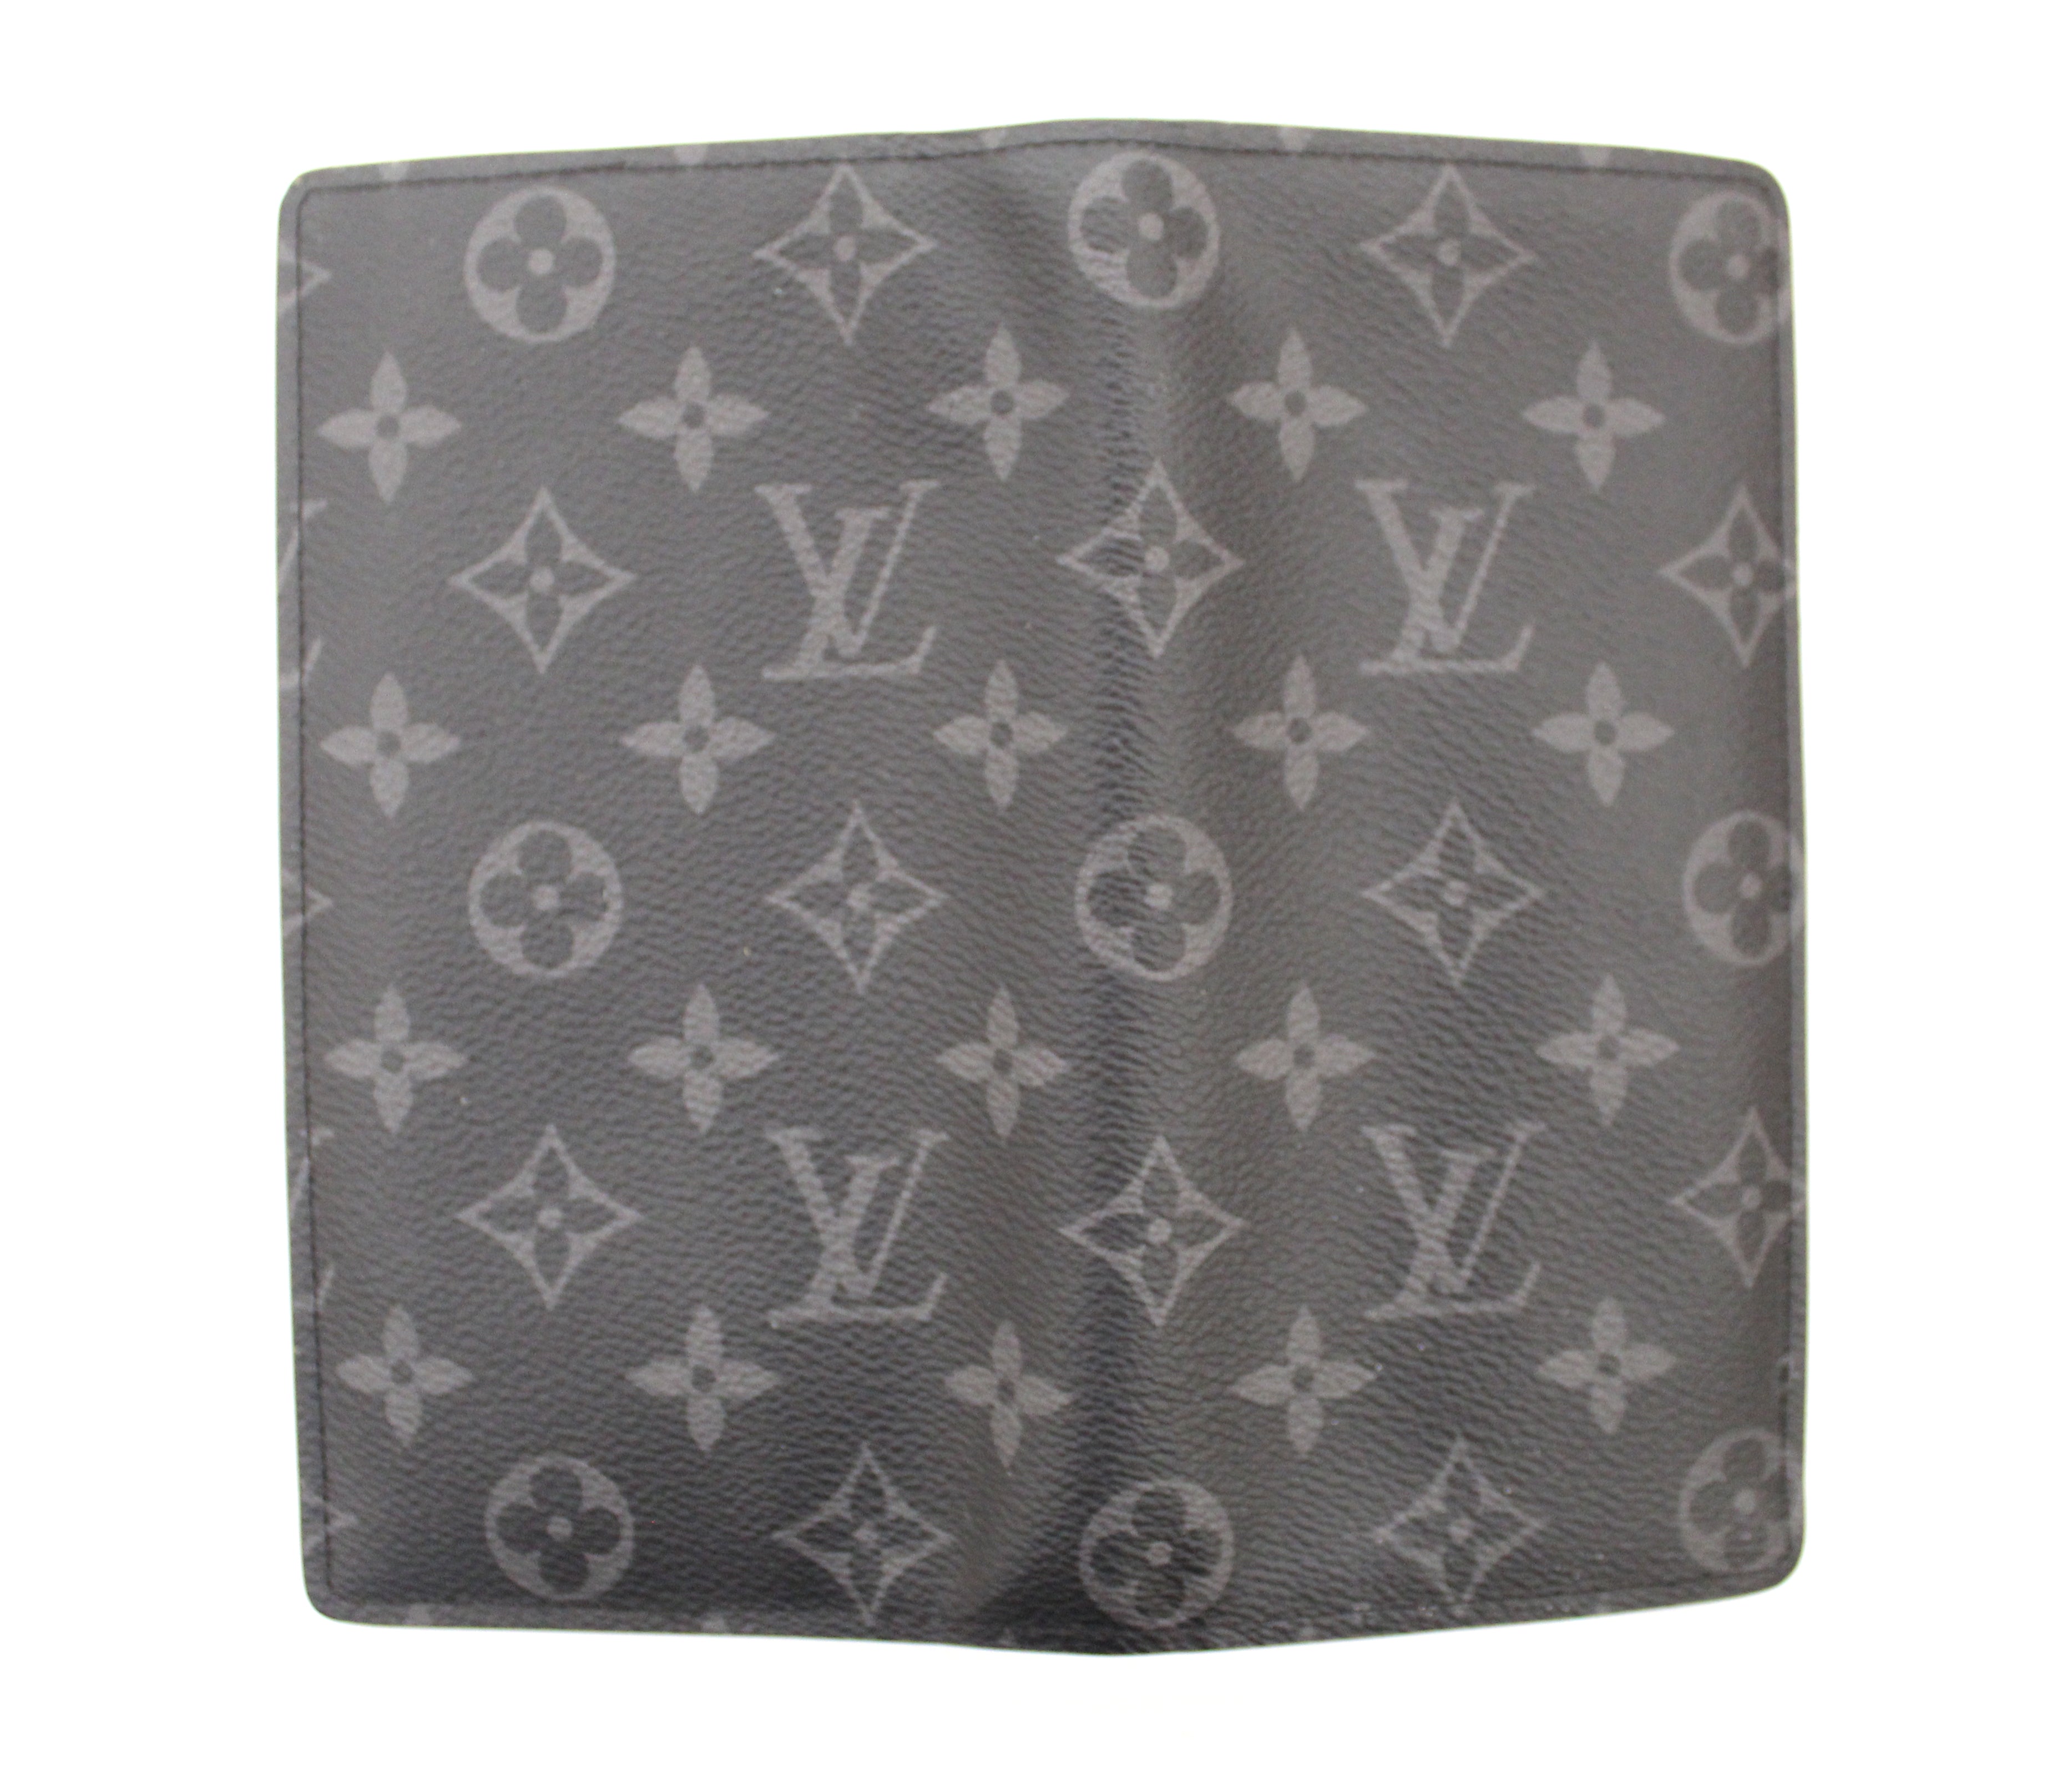 Authentic Louis Vuitton Black/Grey Monogram Eclipse Leather Brazza Lon –  Paris Station Shop